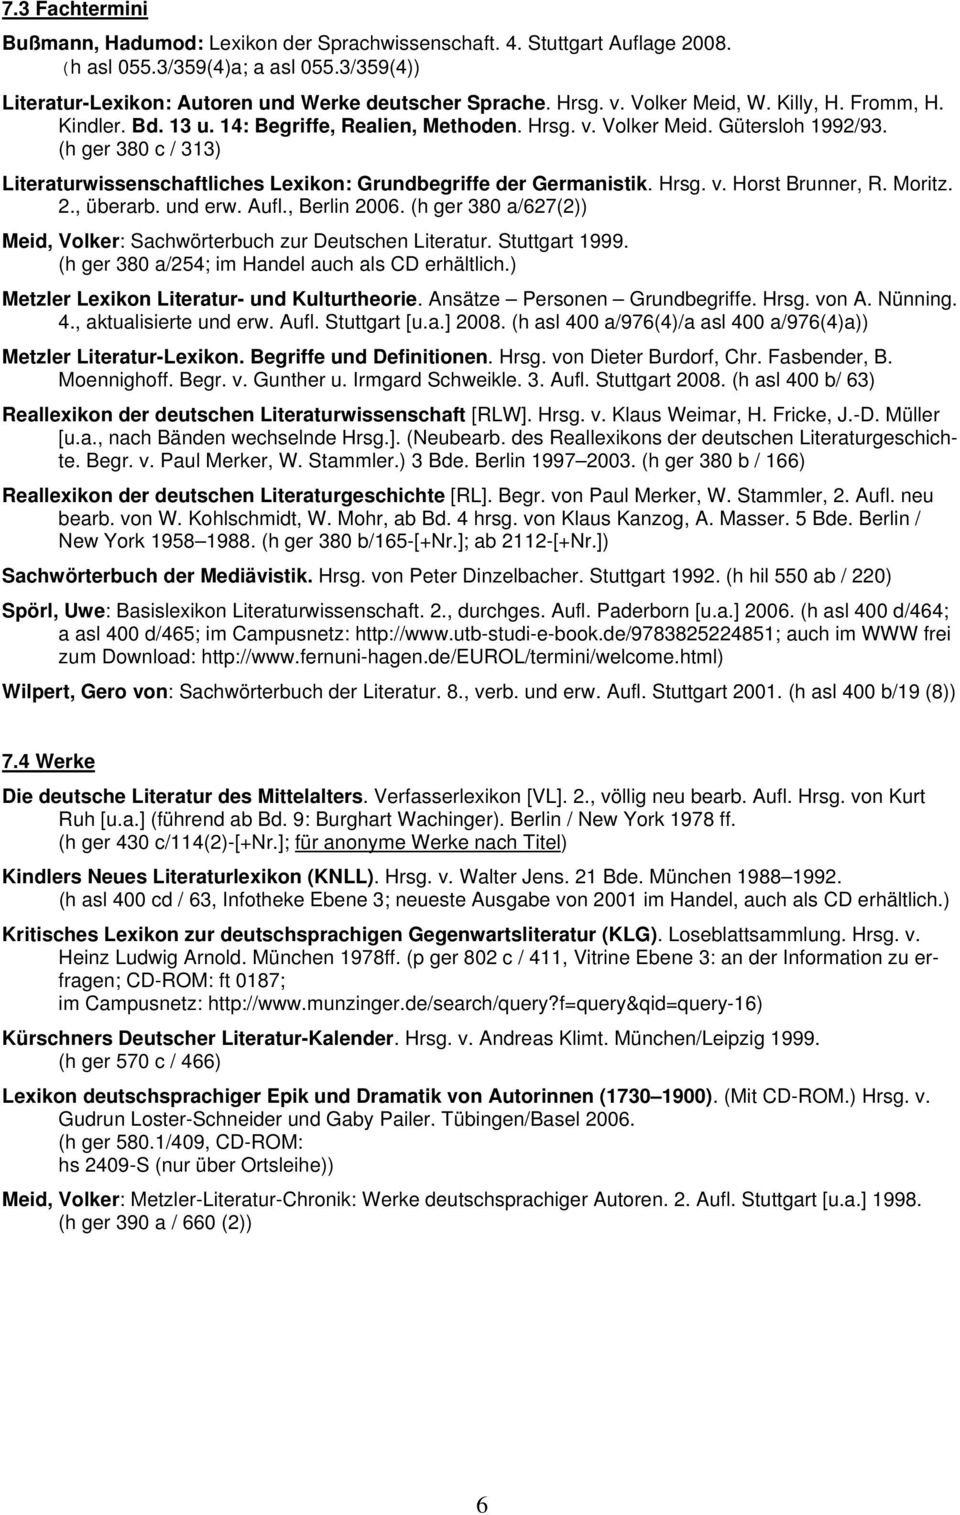 (h ger 380 c / 313) Literaturwissenschaftliches Lexikon: Grundbegriffe der Germanistik. Hrsg. v. Horst Brunner, R. Moritz. 2., überarb. und erw. Aufl., Berlin 2006.